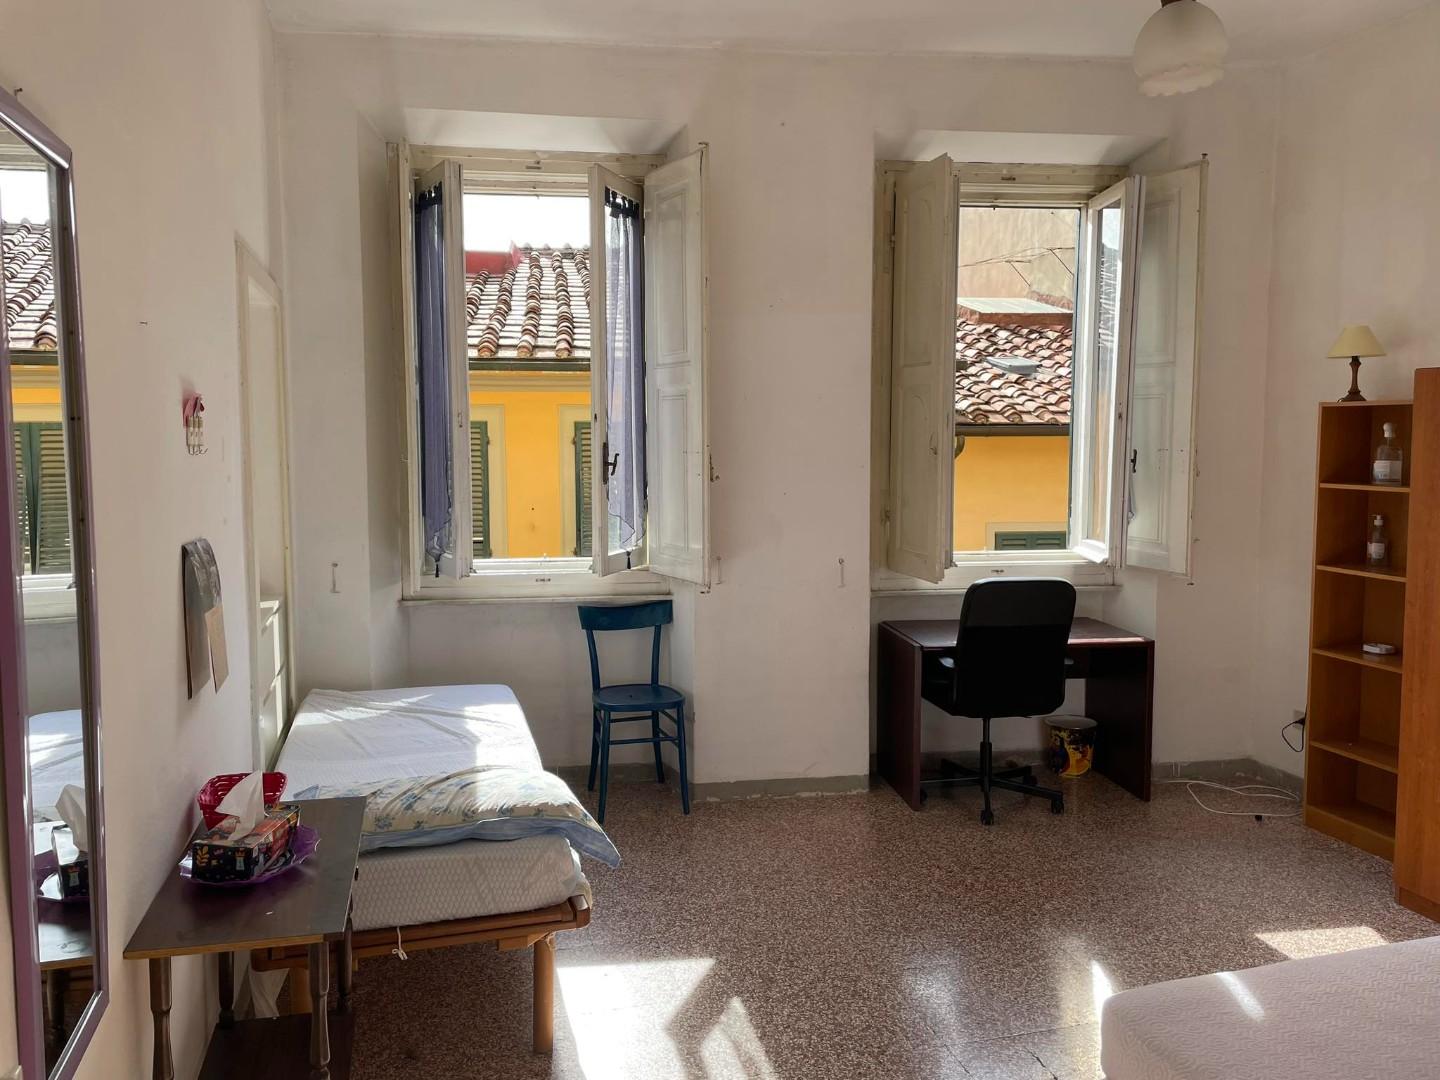 Quadrilocale arredato in affitto, Pisa san francesco